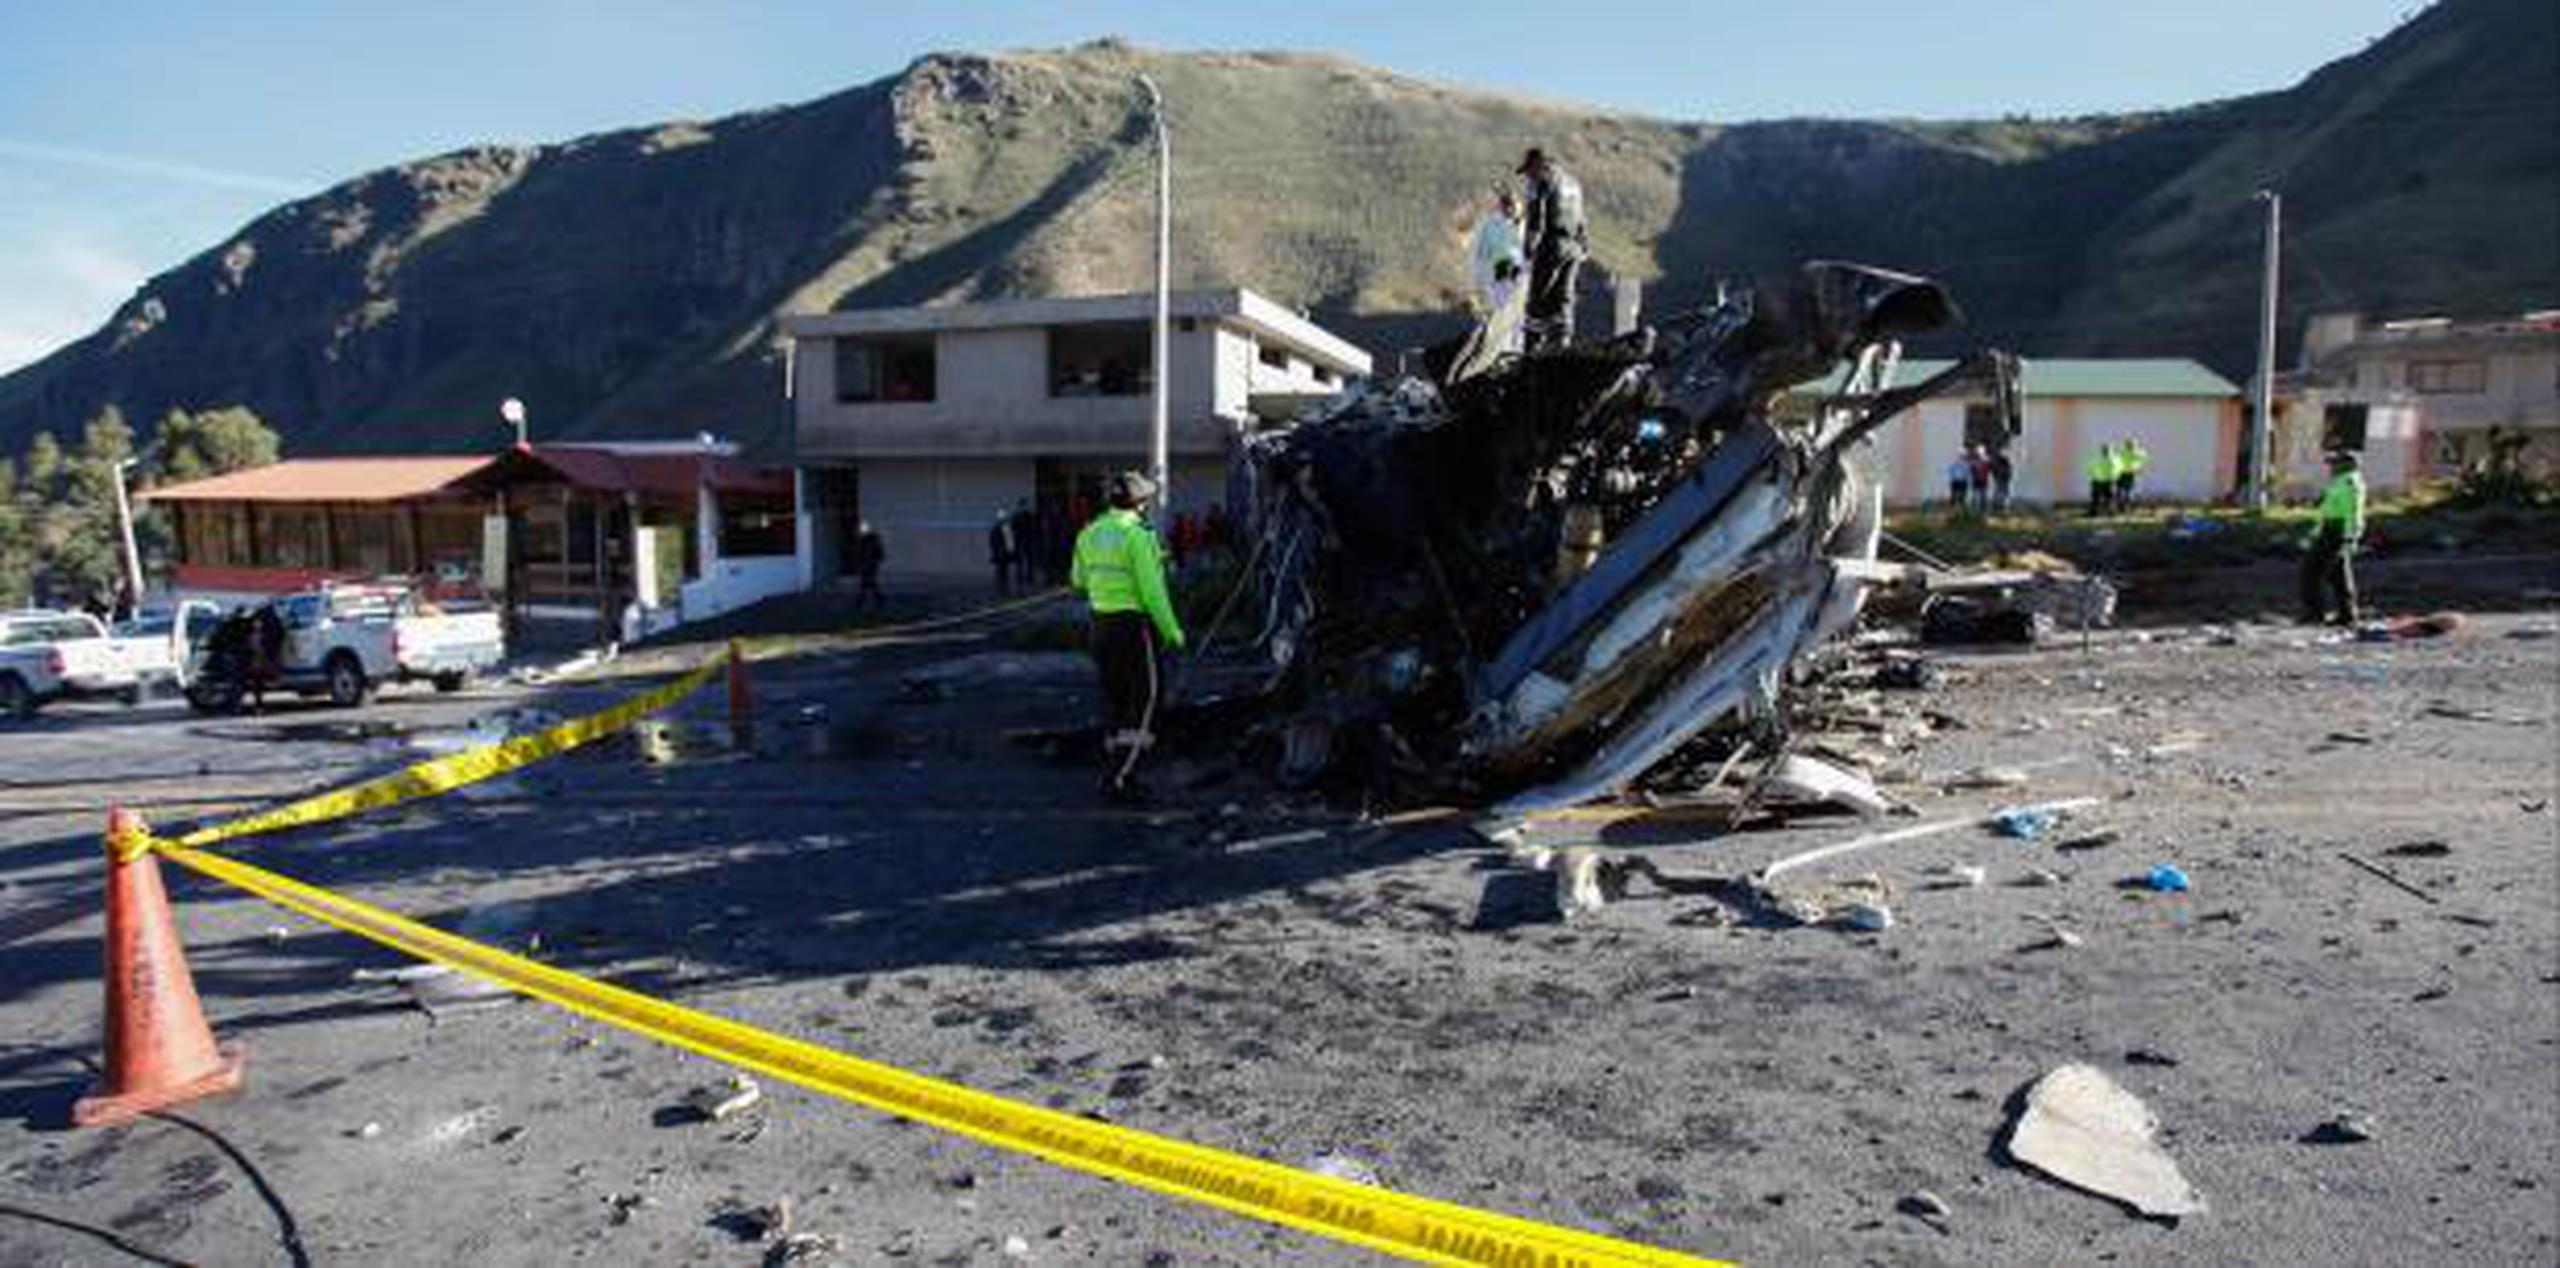 Este es el segundo accidente con una alta cifra de víctimas en dos días luego de que el domingo otro autobús volcó en el sur de Ecuador y causó la muerte de 12 simpatizantes del Barcelona SC, uno de los equipos más populares de Ecuador. (AP)